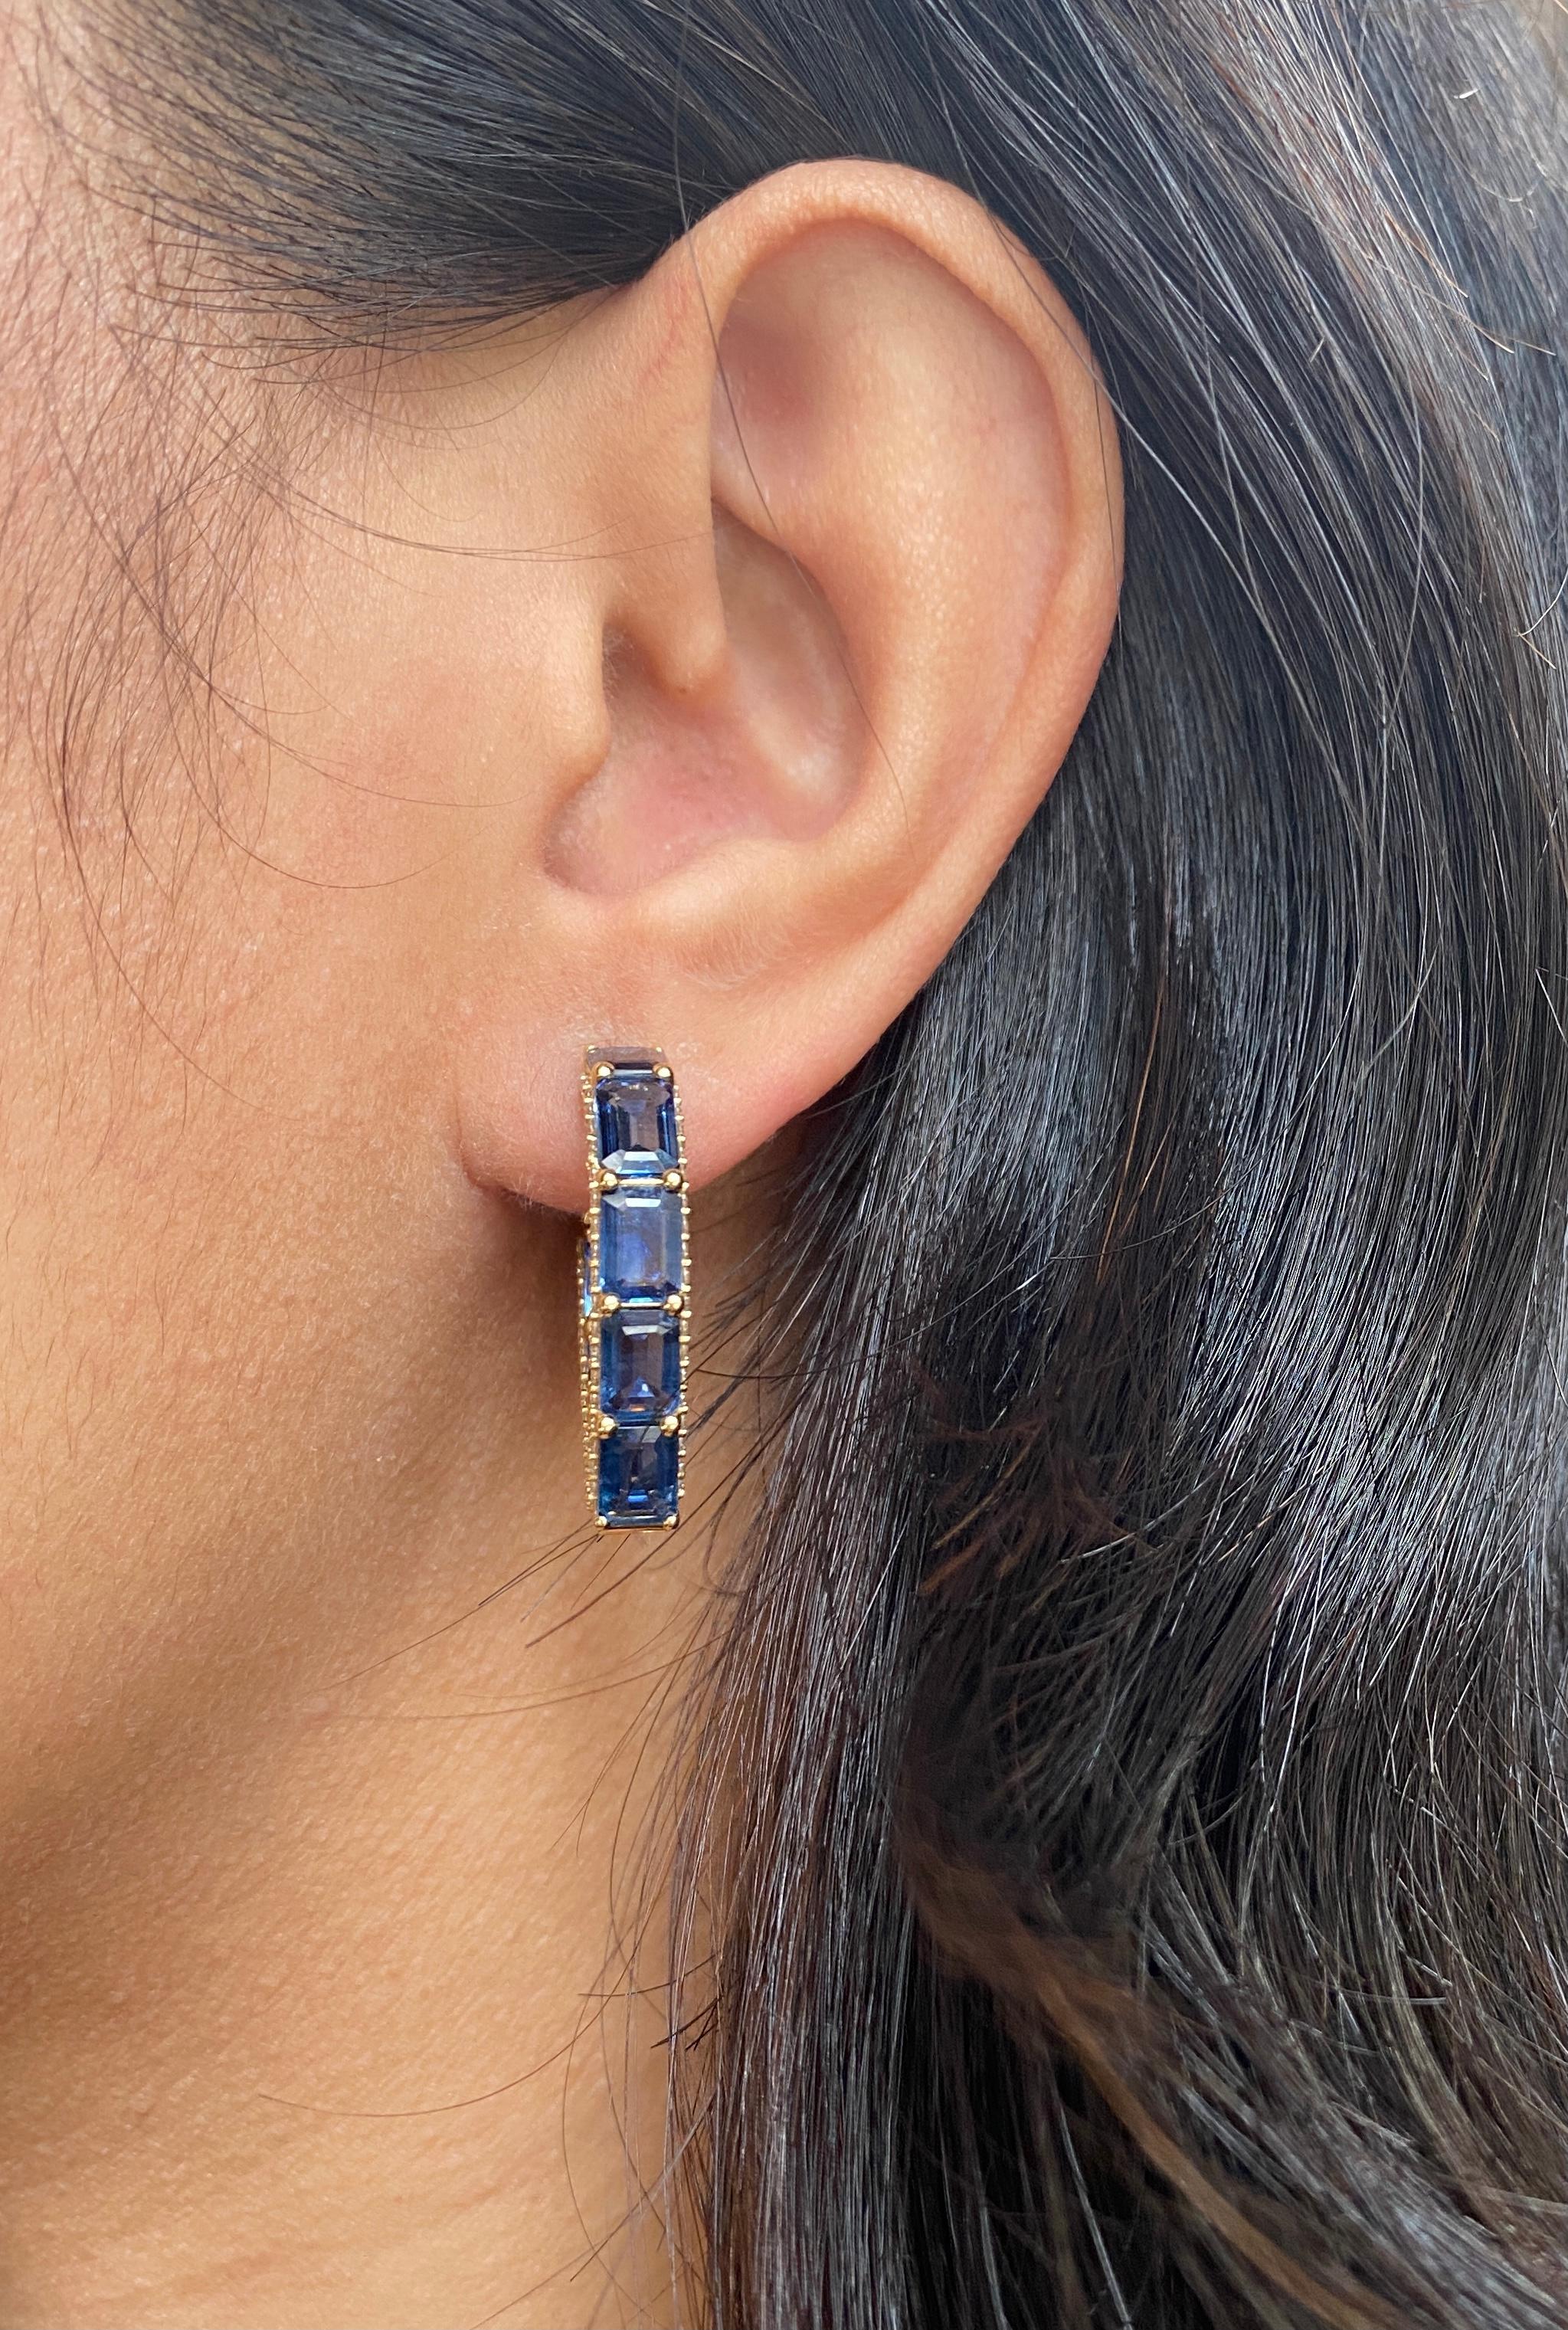 Goshwara Blue Sapphire Emerald Cut Heart Shape with Diamonds Hoops Earrings For Sale 3